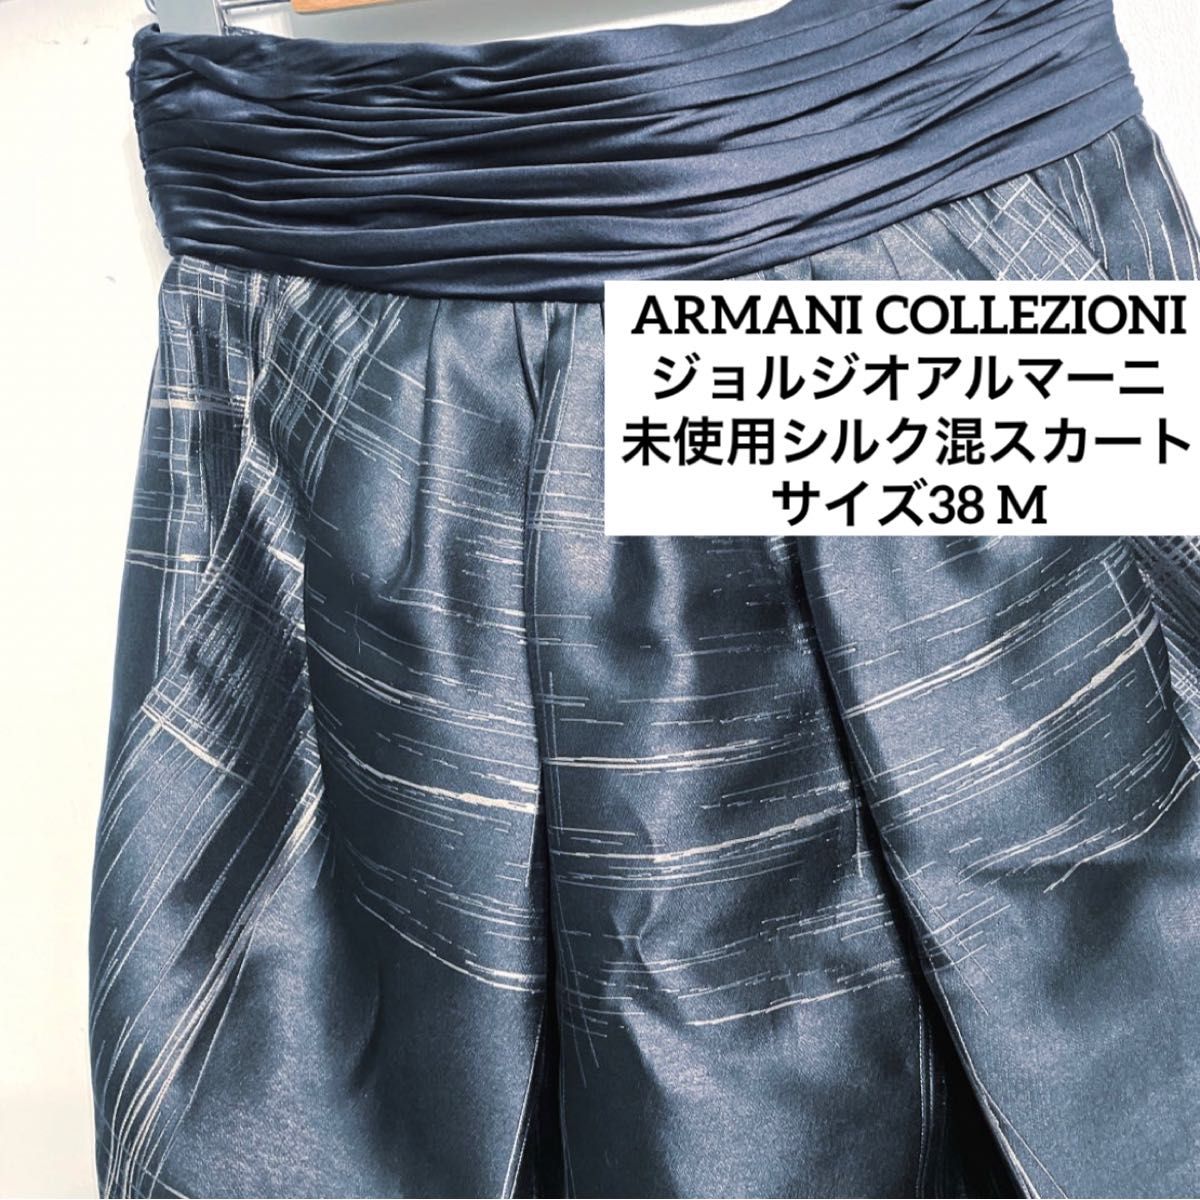 アルマーニコレツォーニ 未使用品 2012コレクション シルク混 スカート 